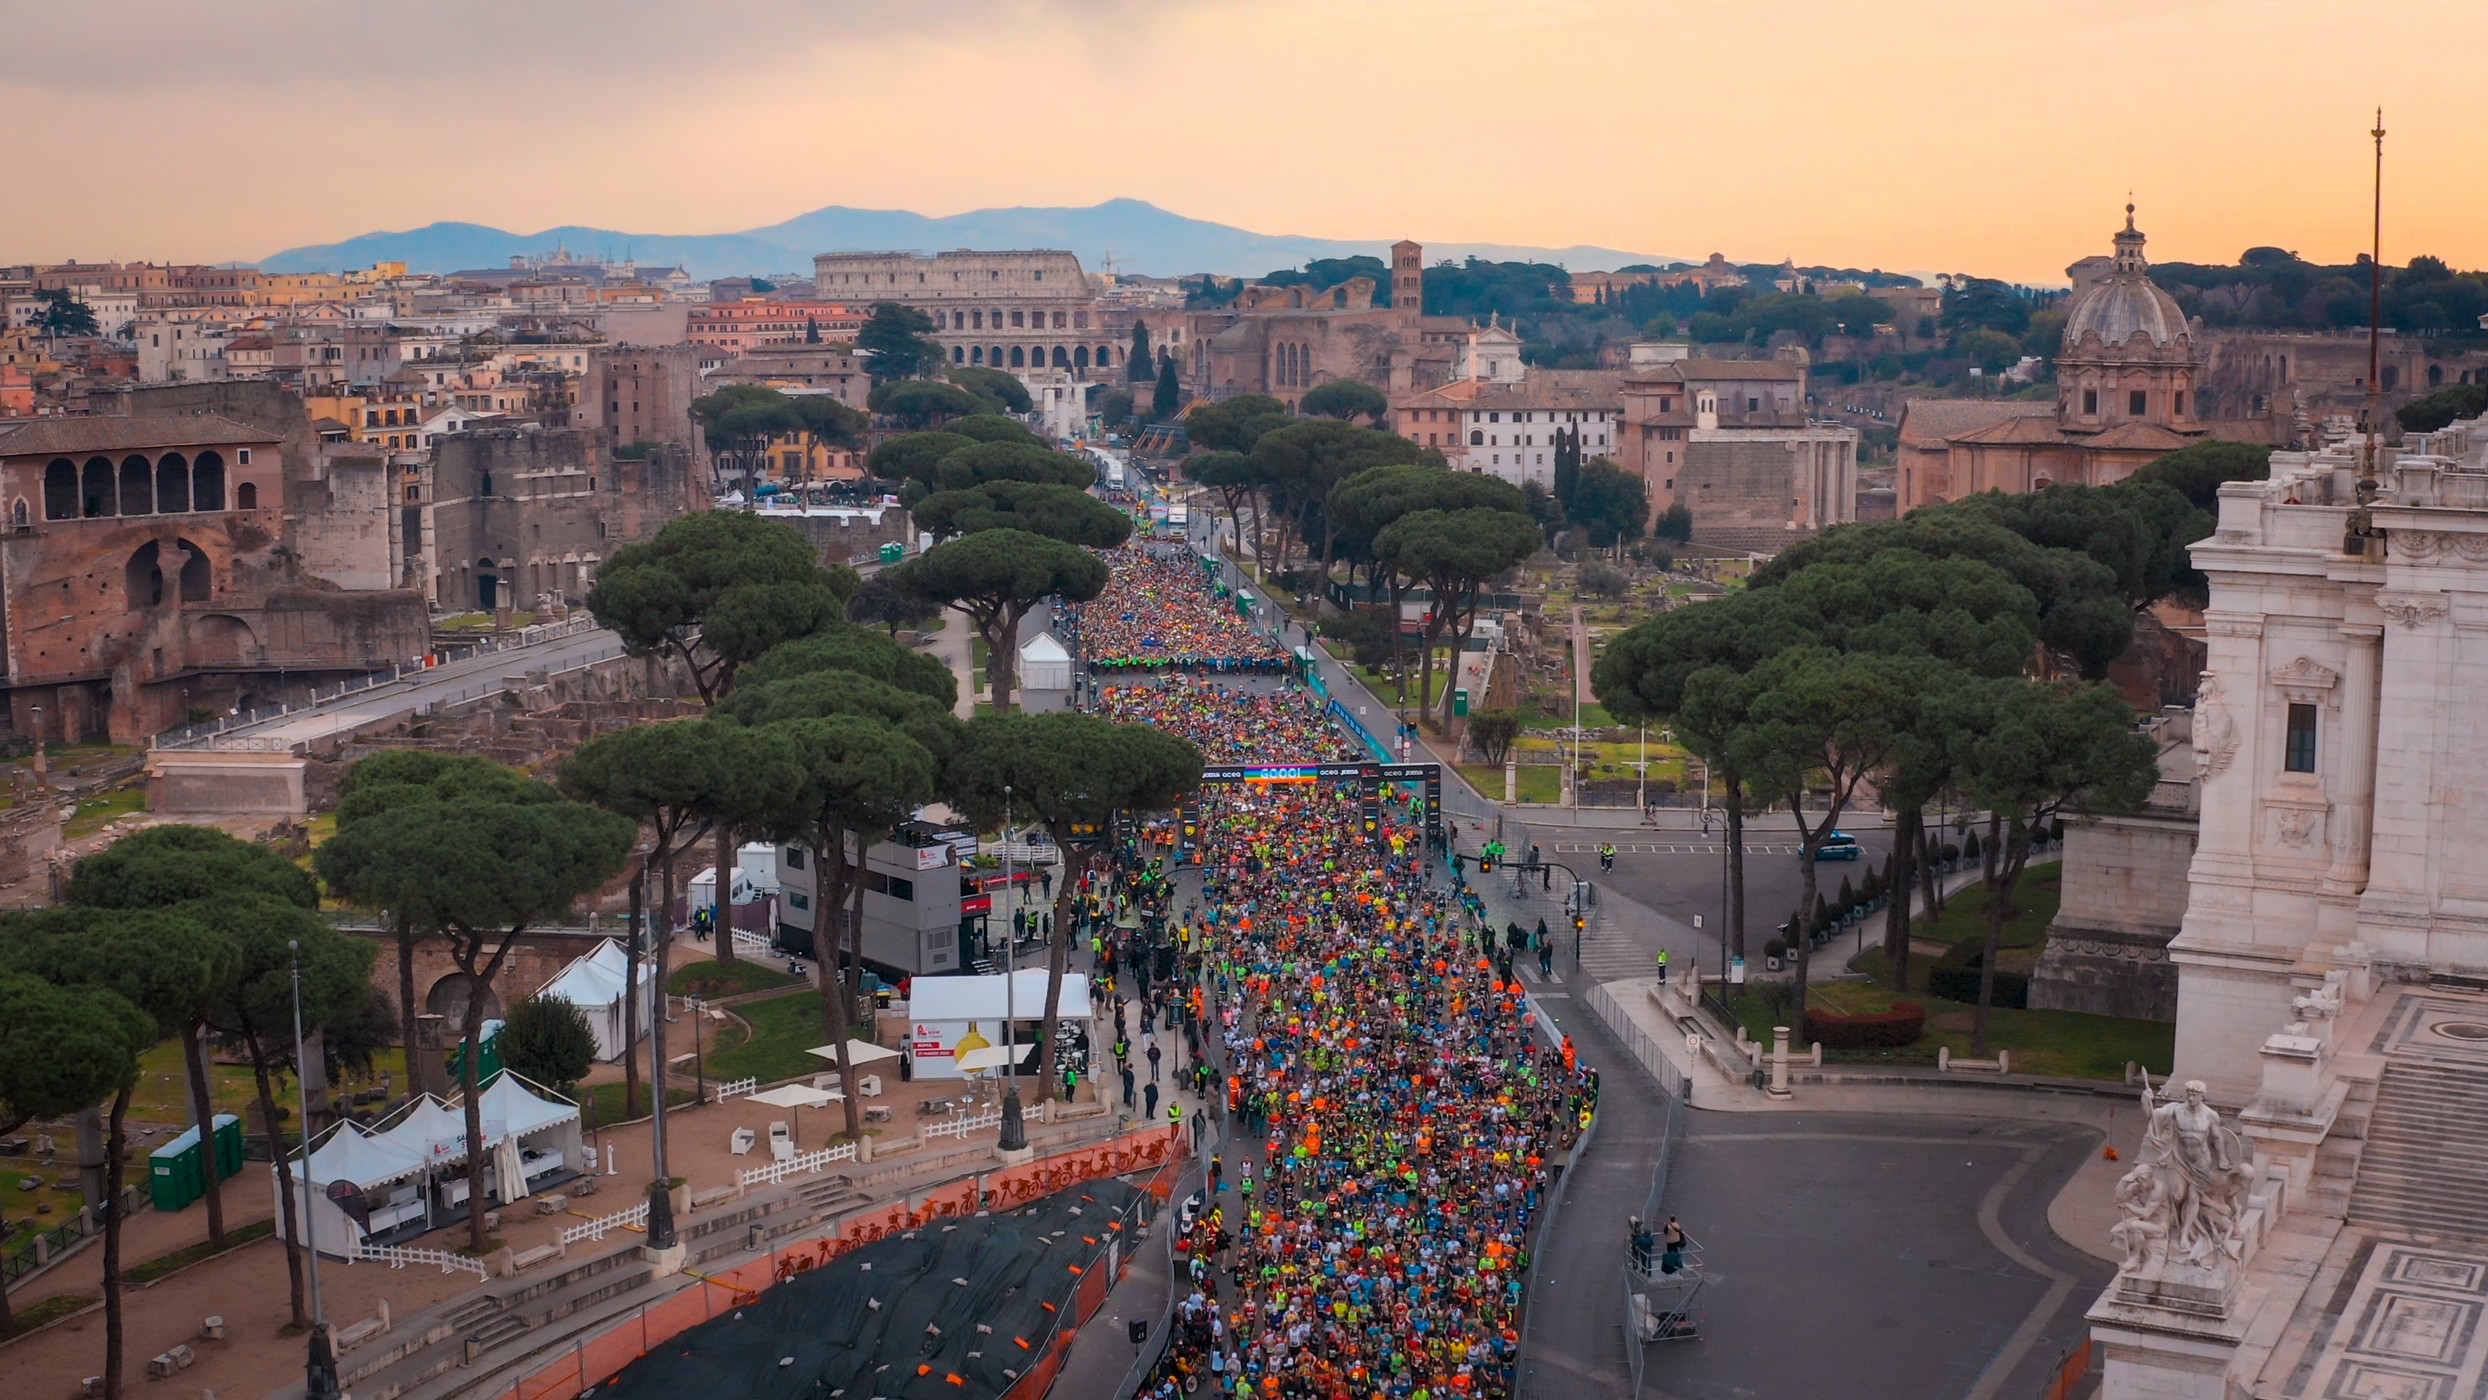 16mila i finisher degli eventi Acea Run Rome The Marathon. 8389 nella maratona